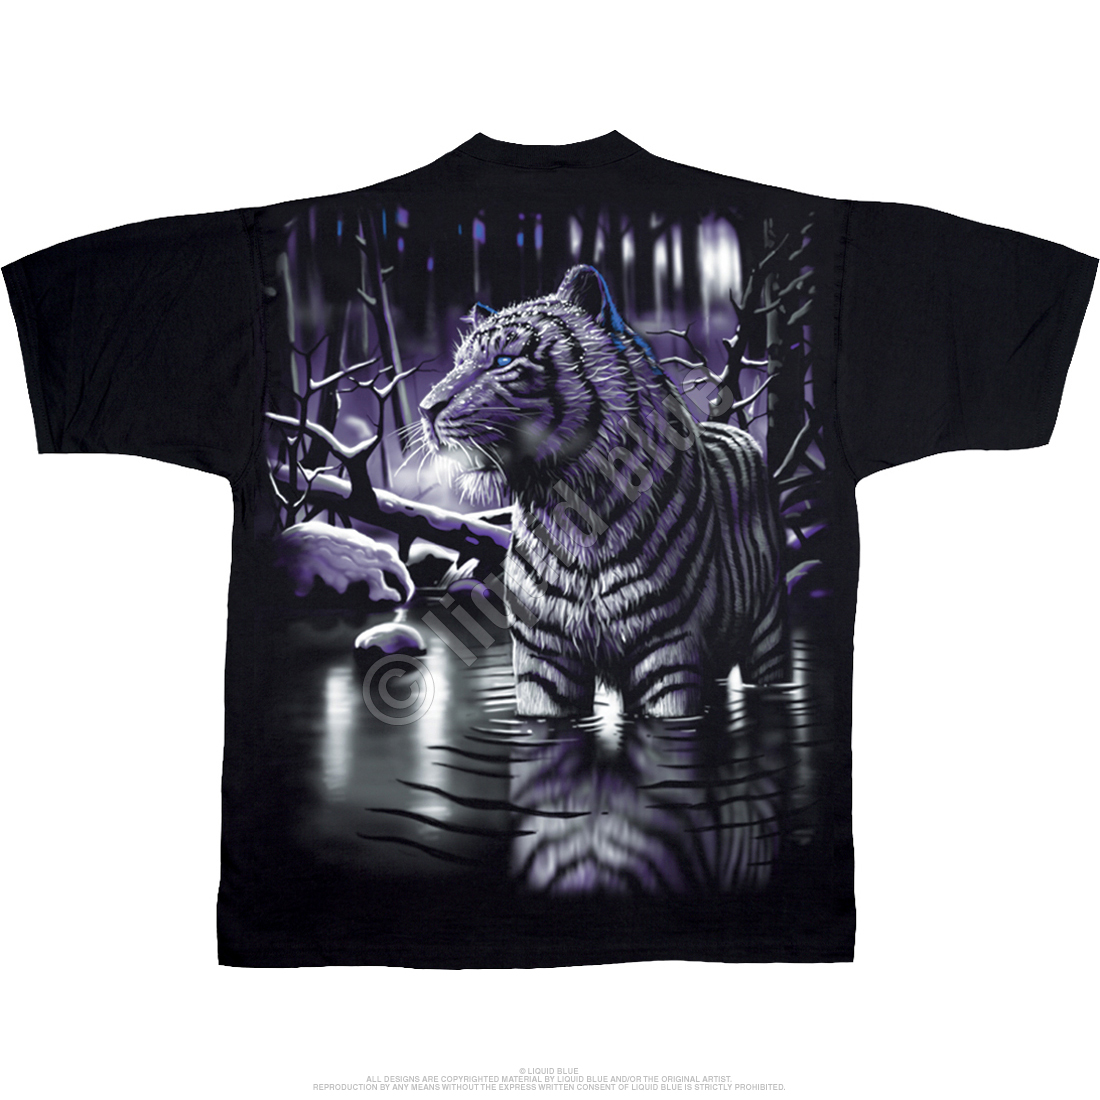 Buy Liquid Blue Men's Tiger Face T-Shirt, Black, Medium at